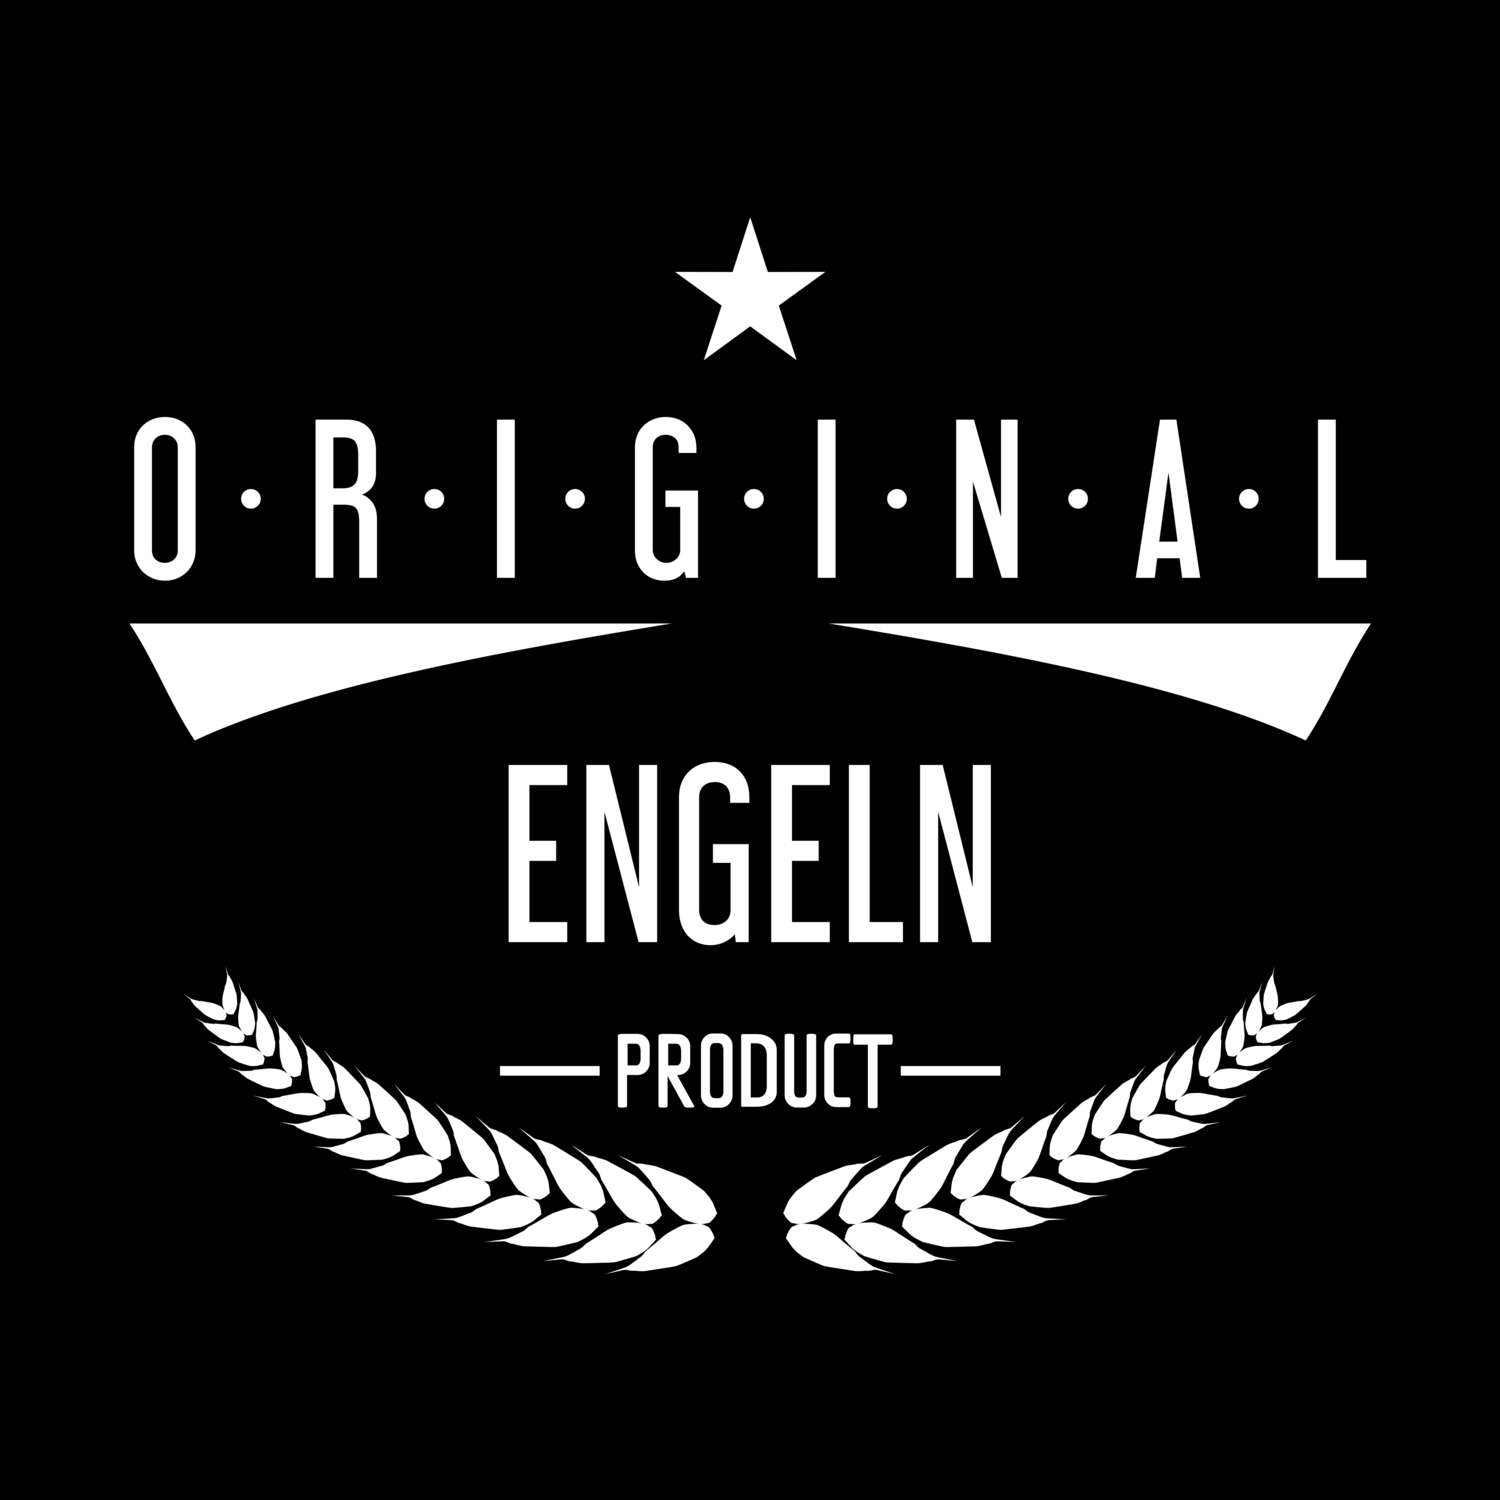 Engeln T-Shirt »Original Product«